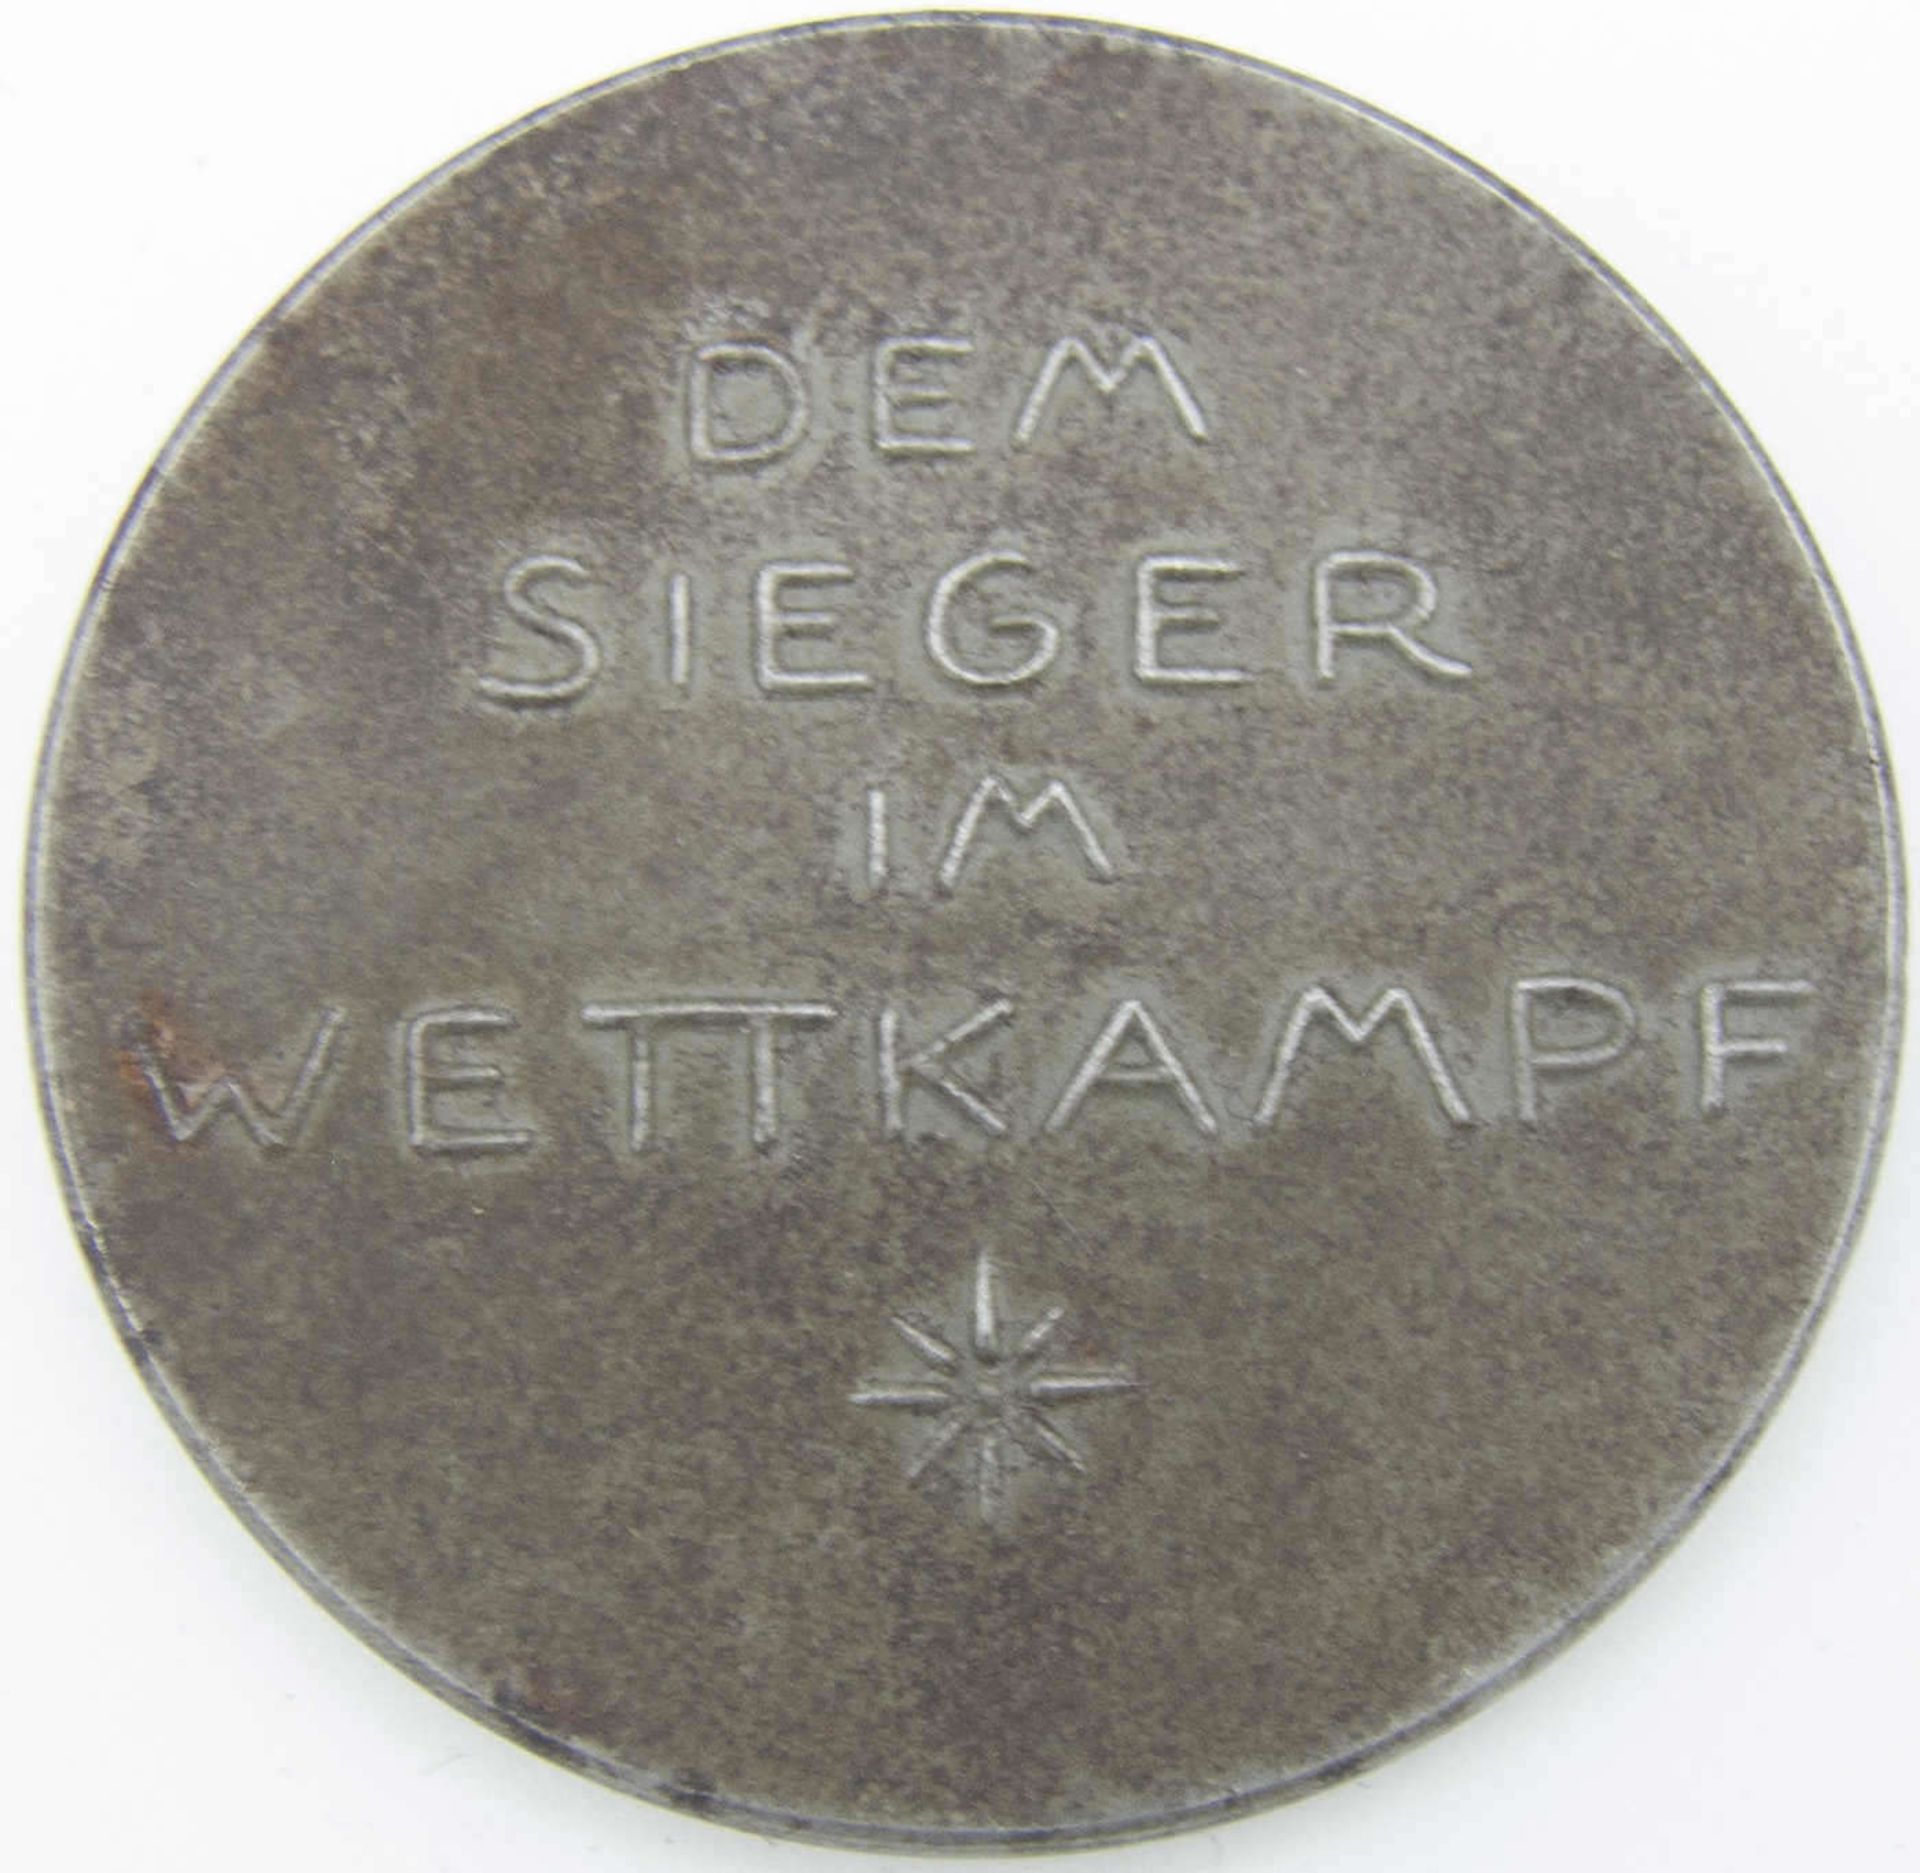 Sportmedaille, Württenbergische Jugendwehr, "Dem Sieger im Wettkampf"Sport medal, Württenberg - Bild 2 aus 2